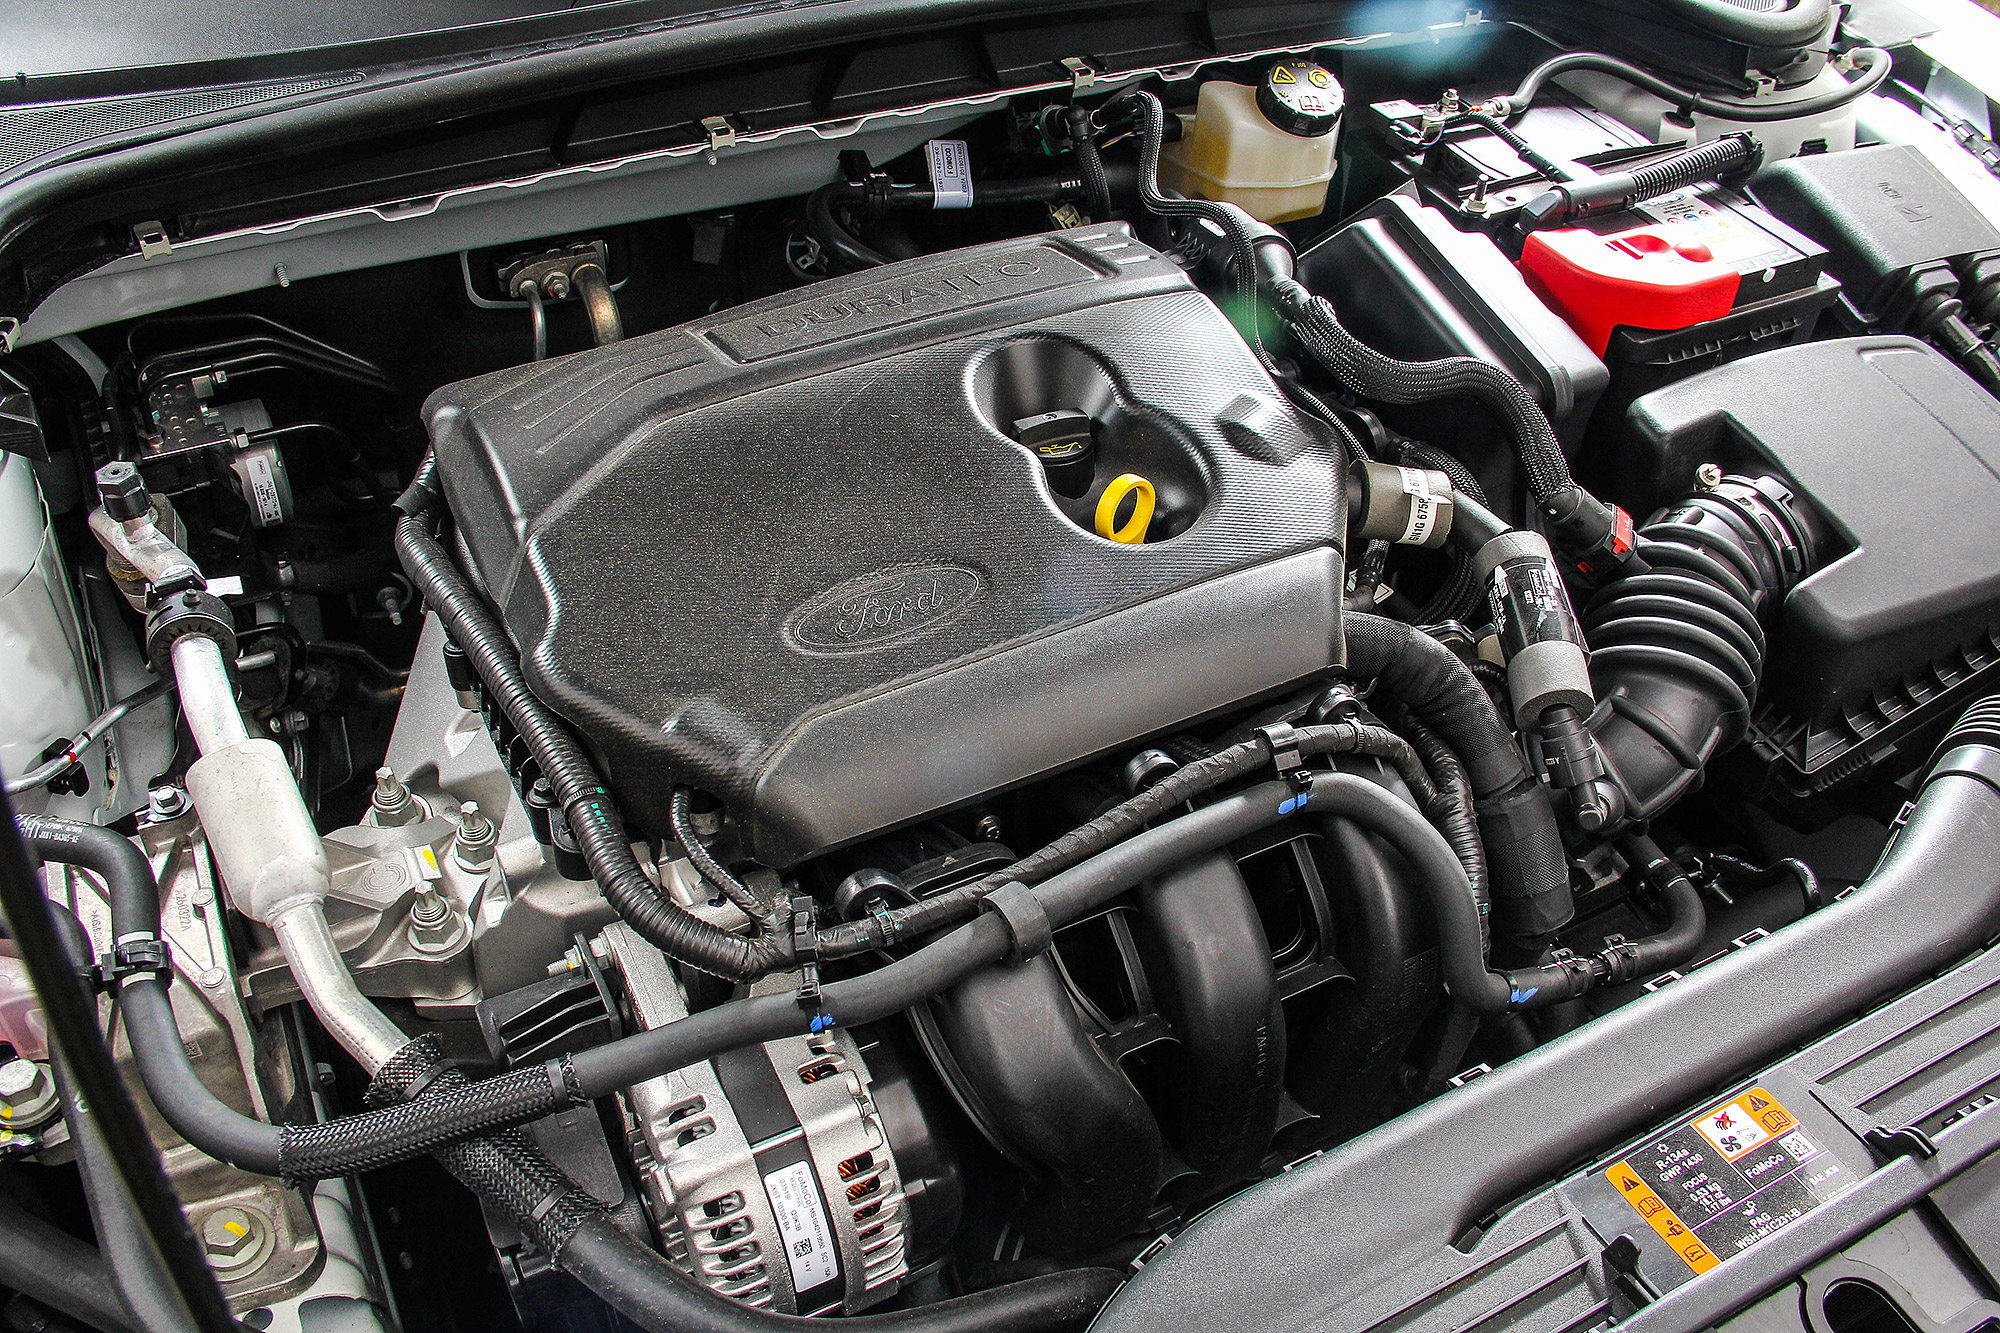 1.5 升直列 3 缸自然進氣引擎具有 123 匹的最大馬力。 